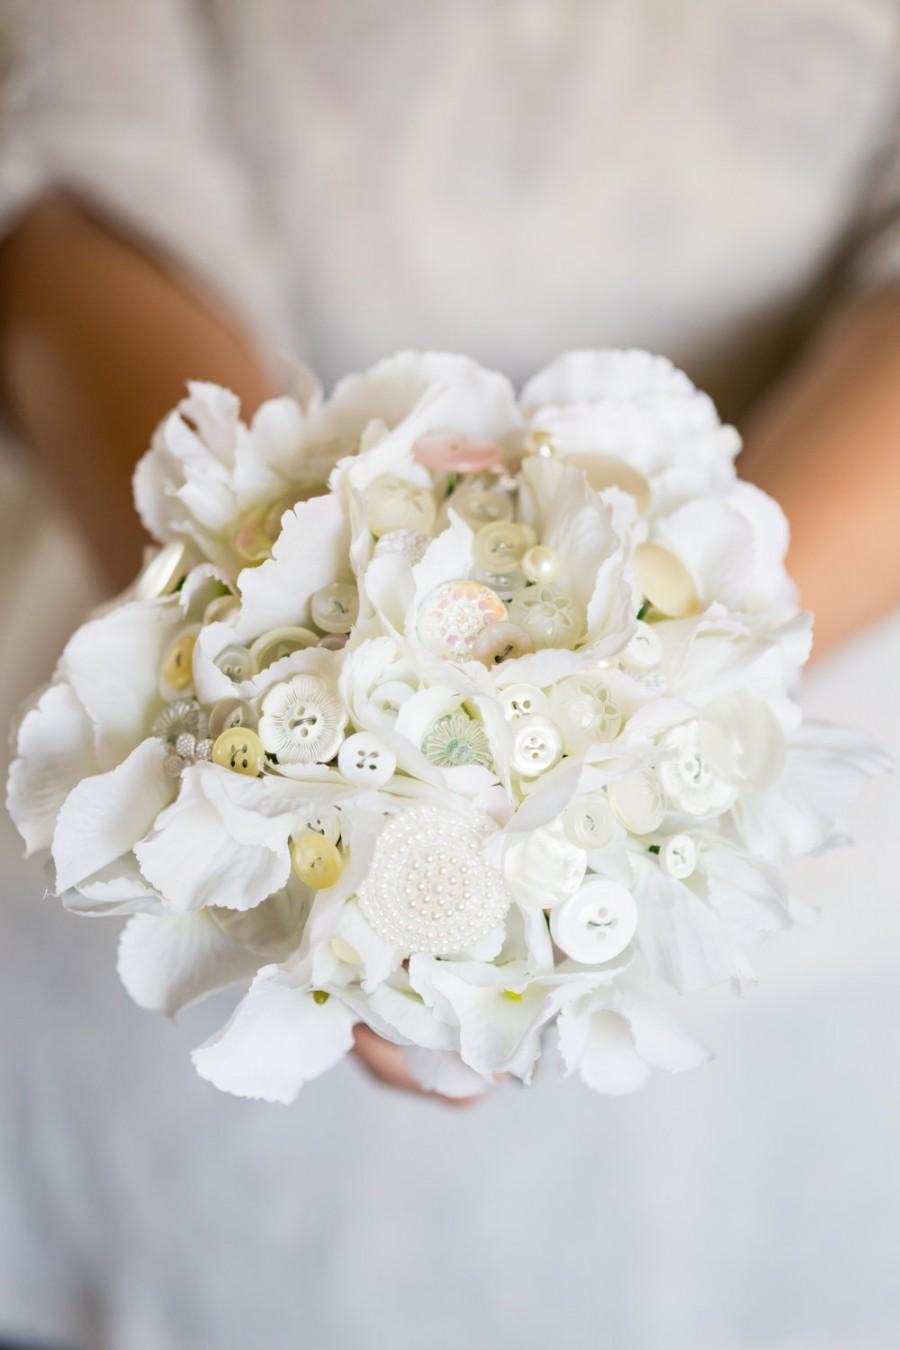 زفاف - White flower and button bouquet, bride, bridesmaids or flower girls